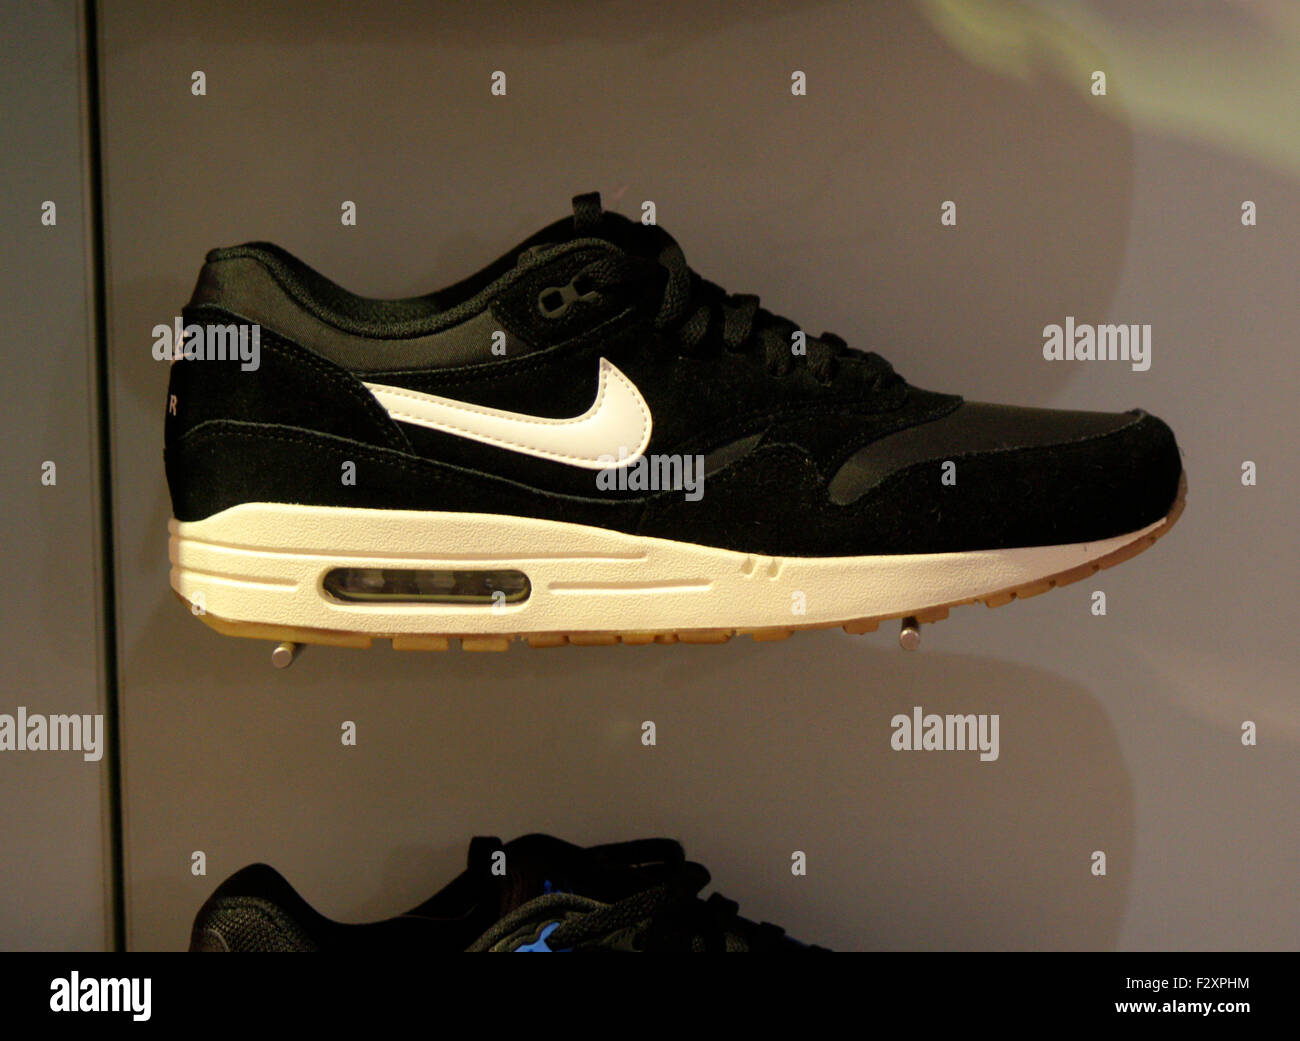 Nike -Fotos und -Bildmaterial in hoher Auflösung - Seite 2 - Alamy